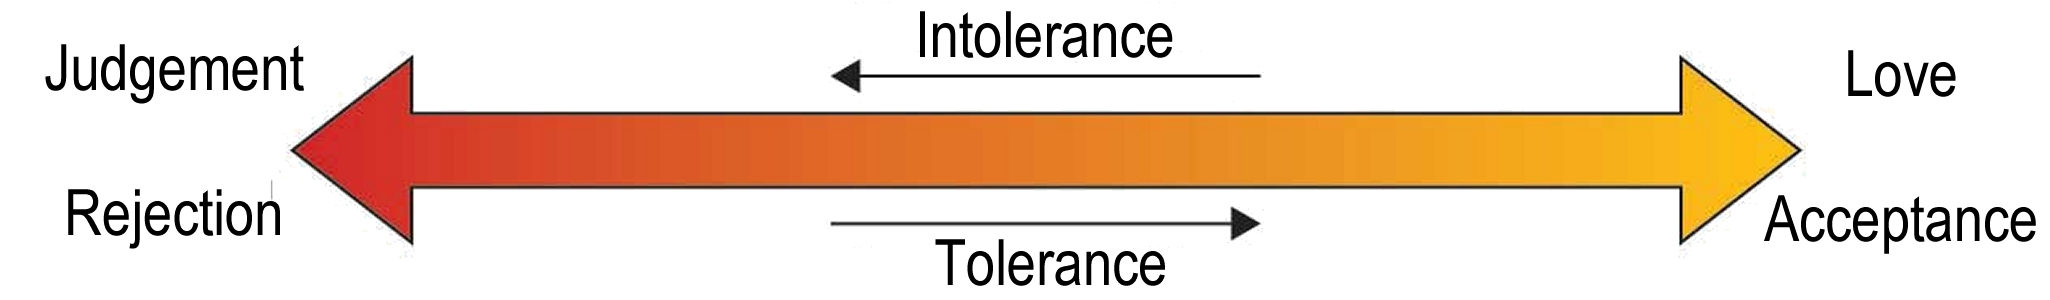 tolerance spectrum intolerance judgement rejection tolerance love acceptance